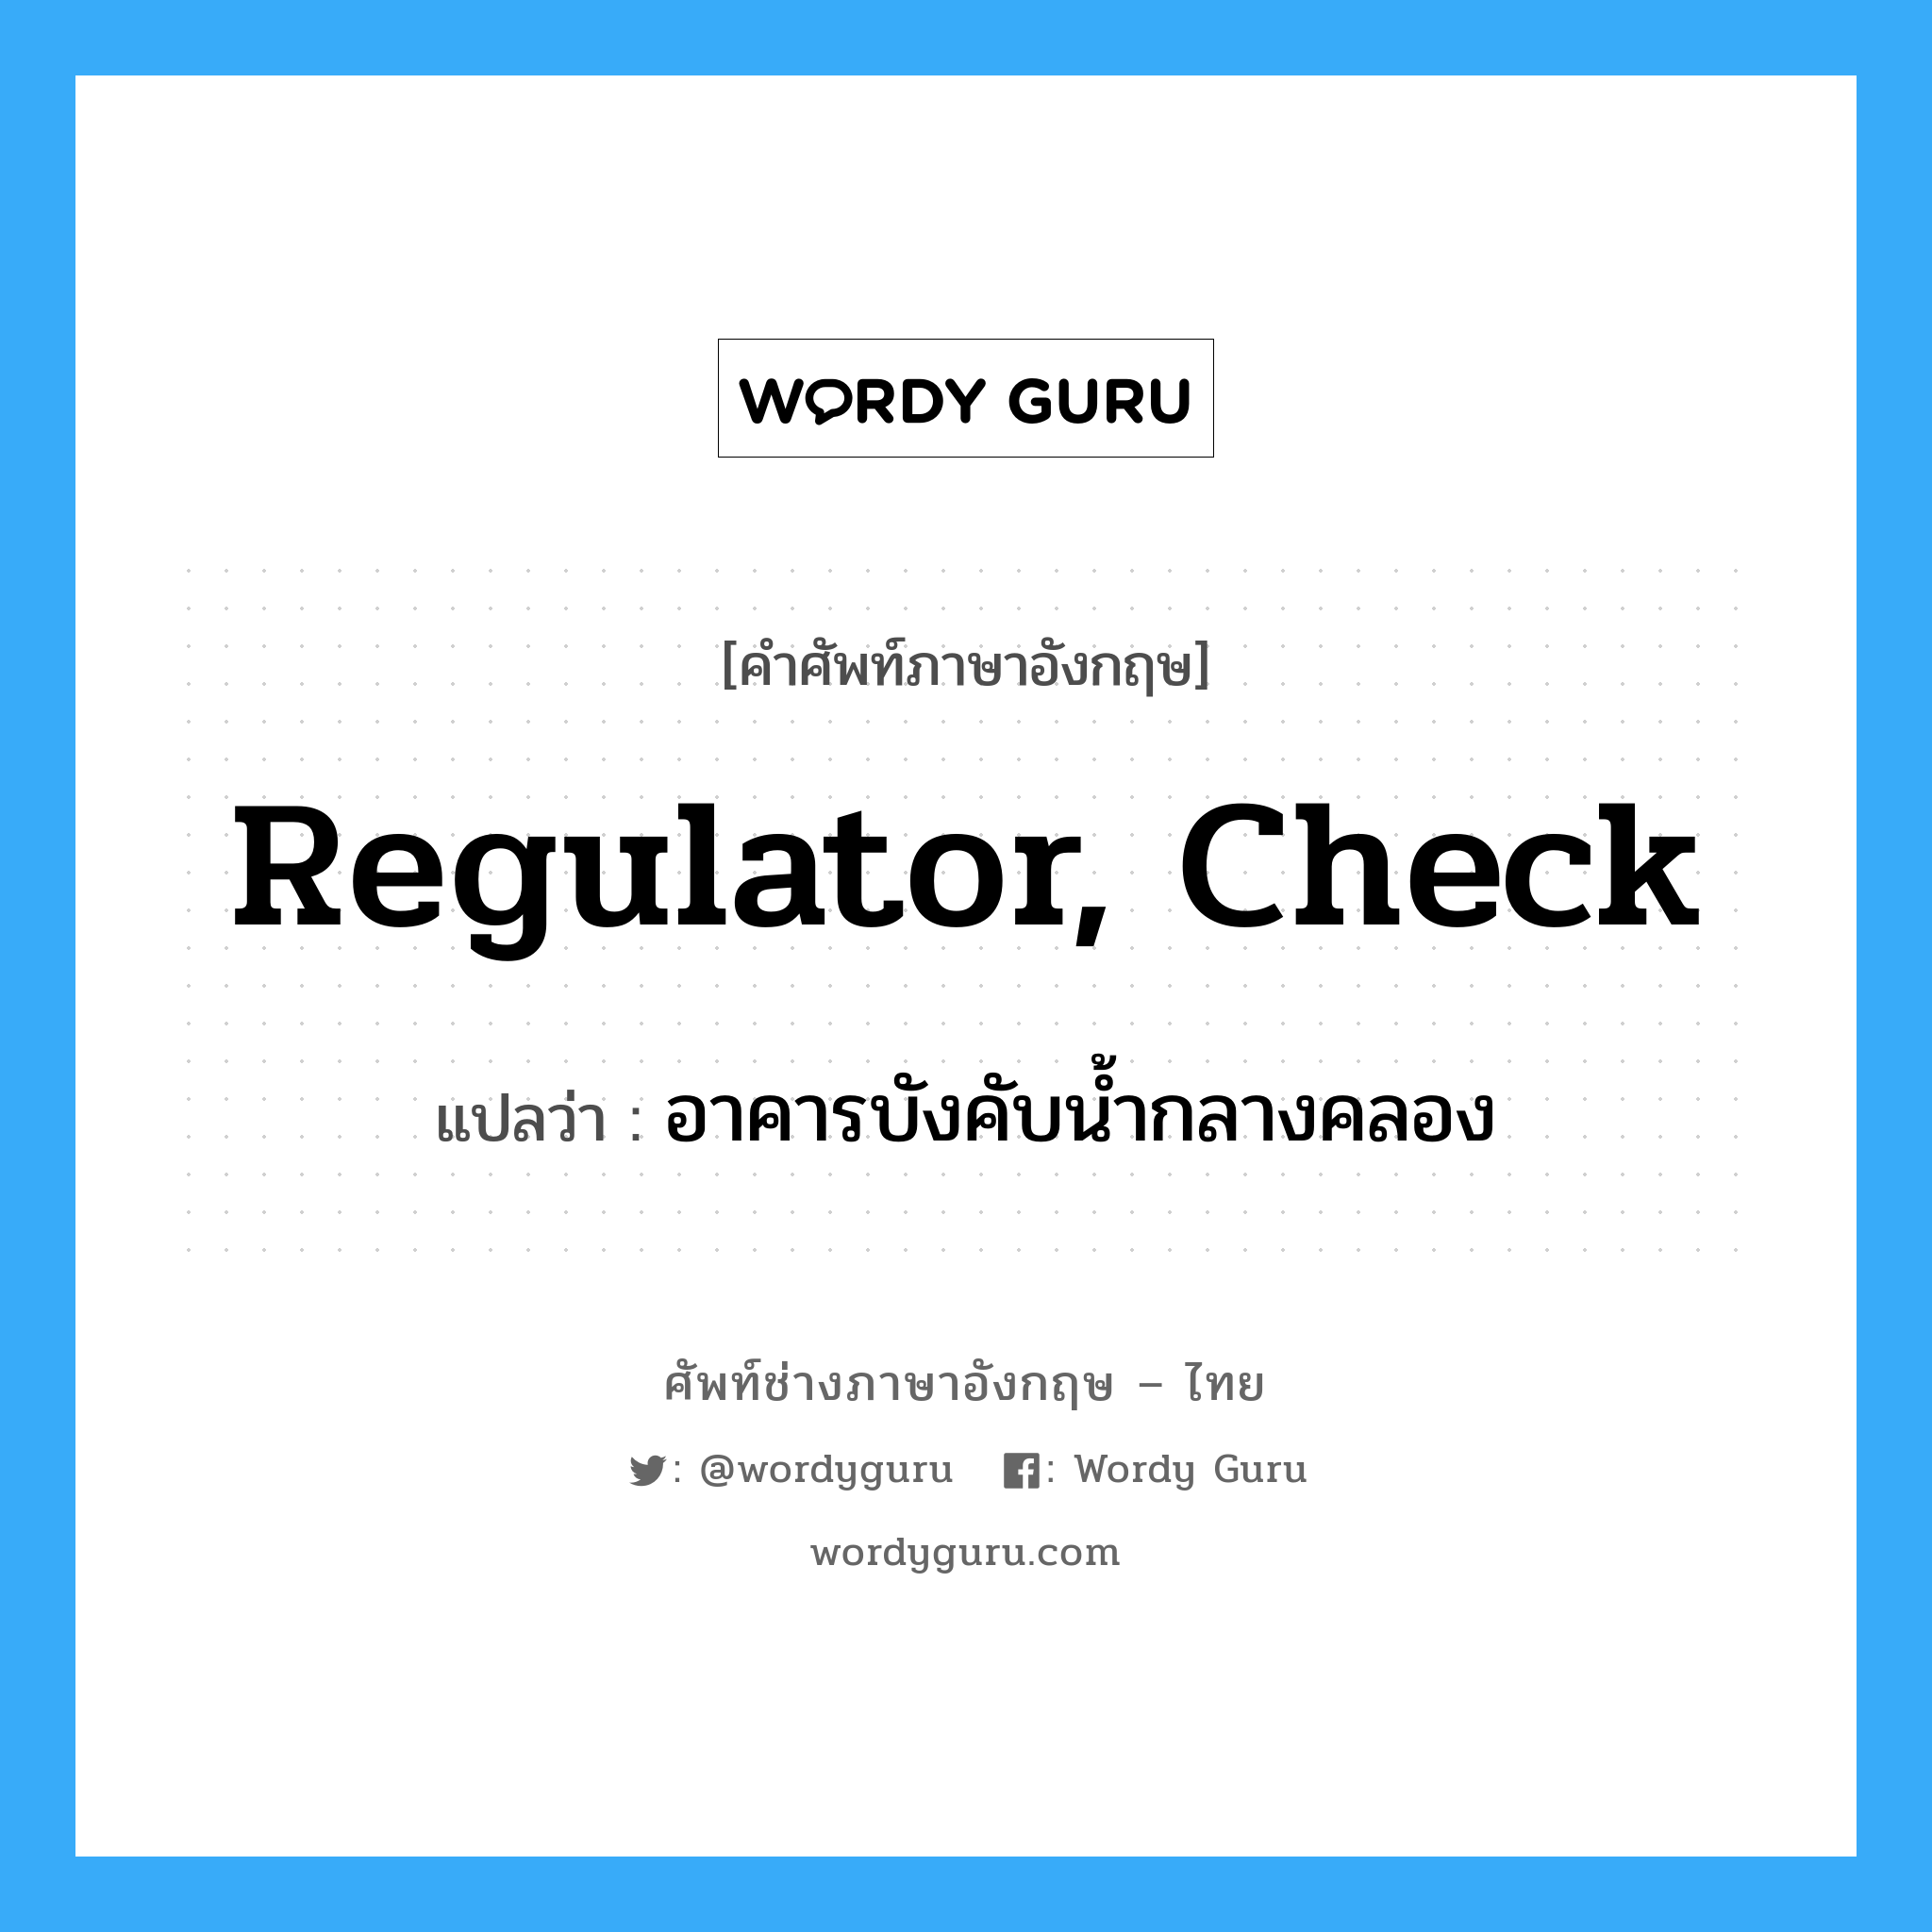 regulator, check แปลว่า?, คำศัพท์ช่างภาษาอังกฤษ - ไทย regulator, check คำศัพท์ภาษาอังกฤษ regulator, check แปลว่า อาคารบังคับน้ำกลางคลอง